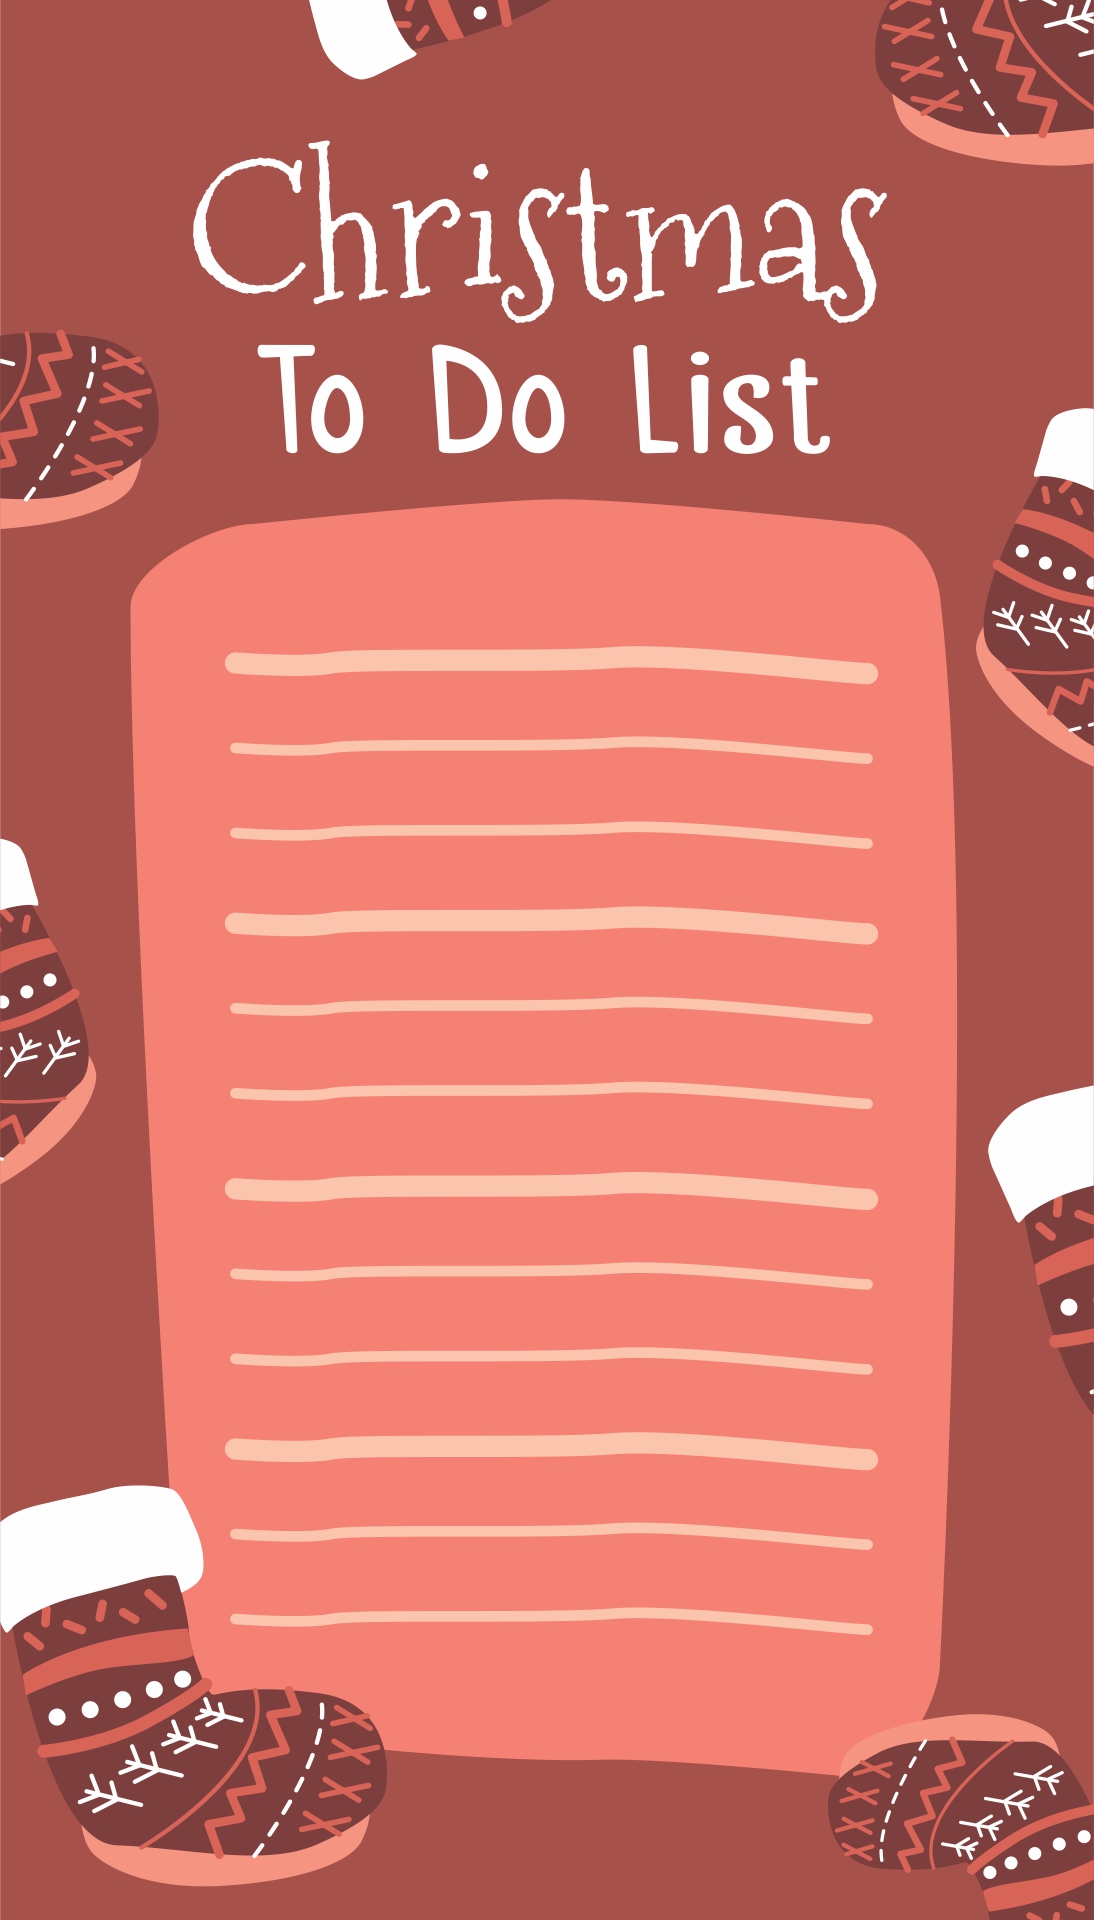 Printable Christmas List to Do